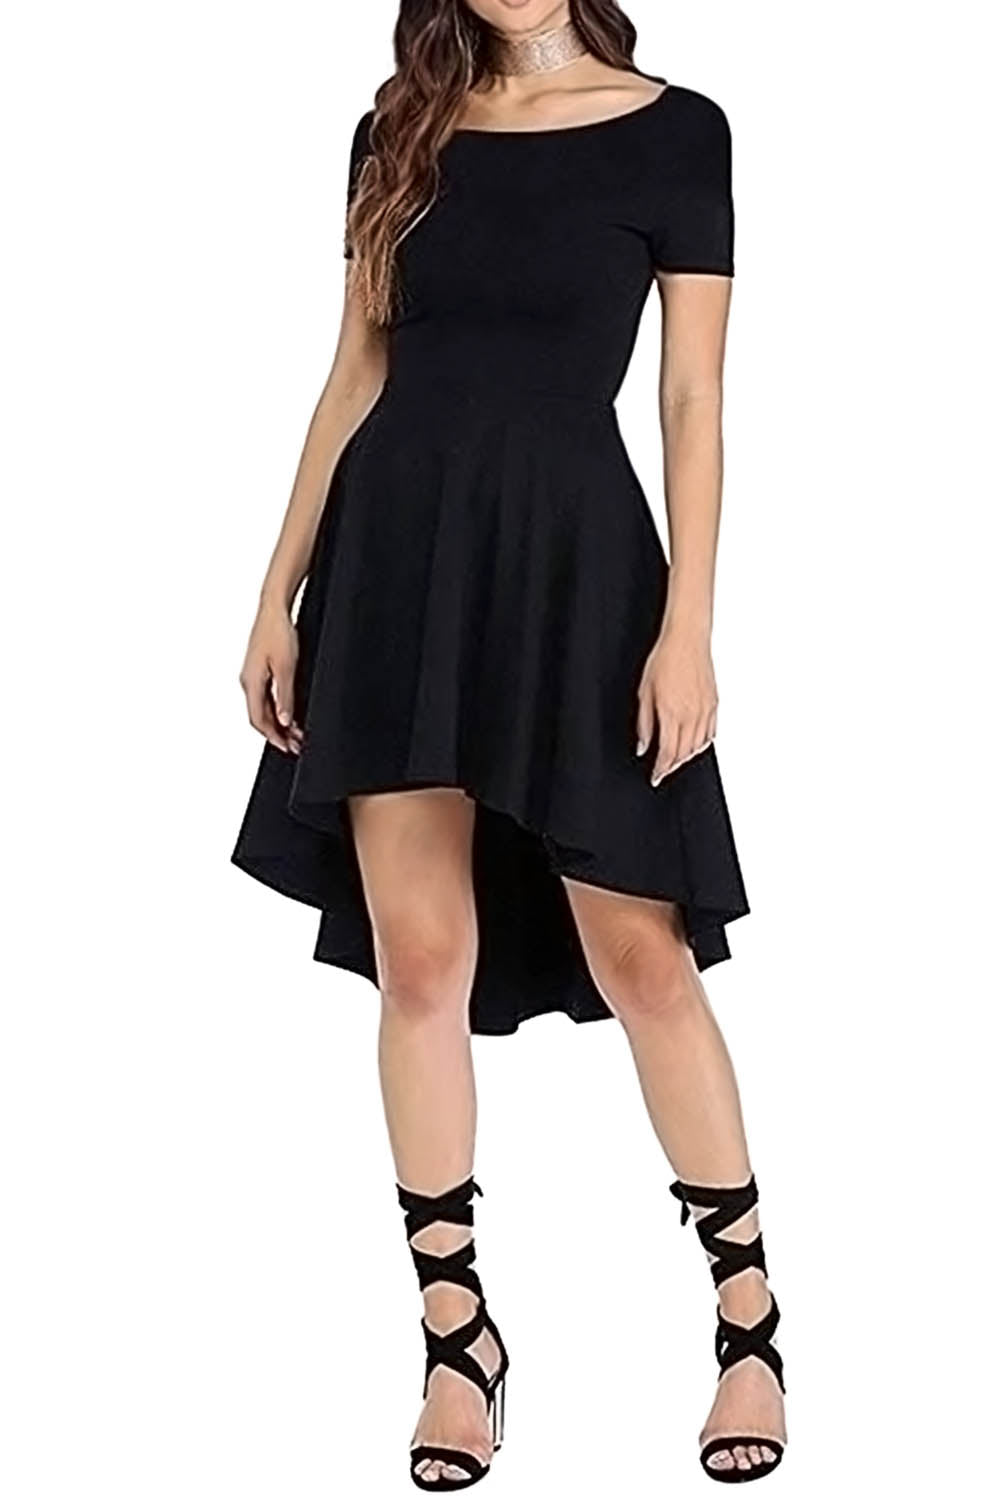 short black skater dress